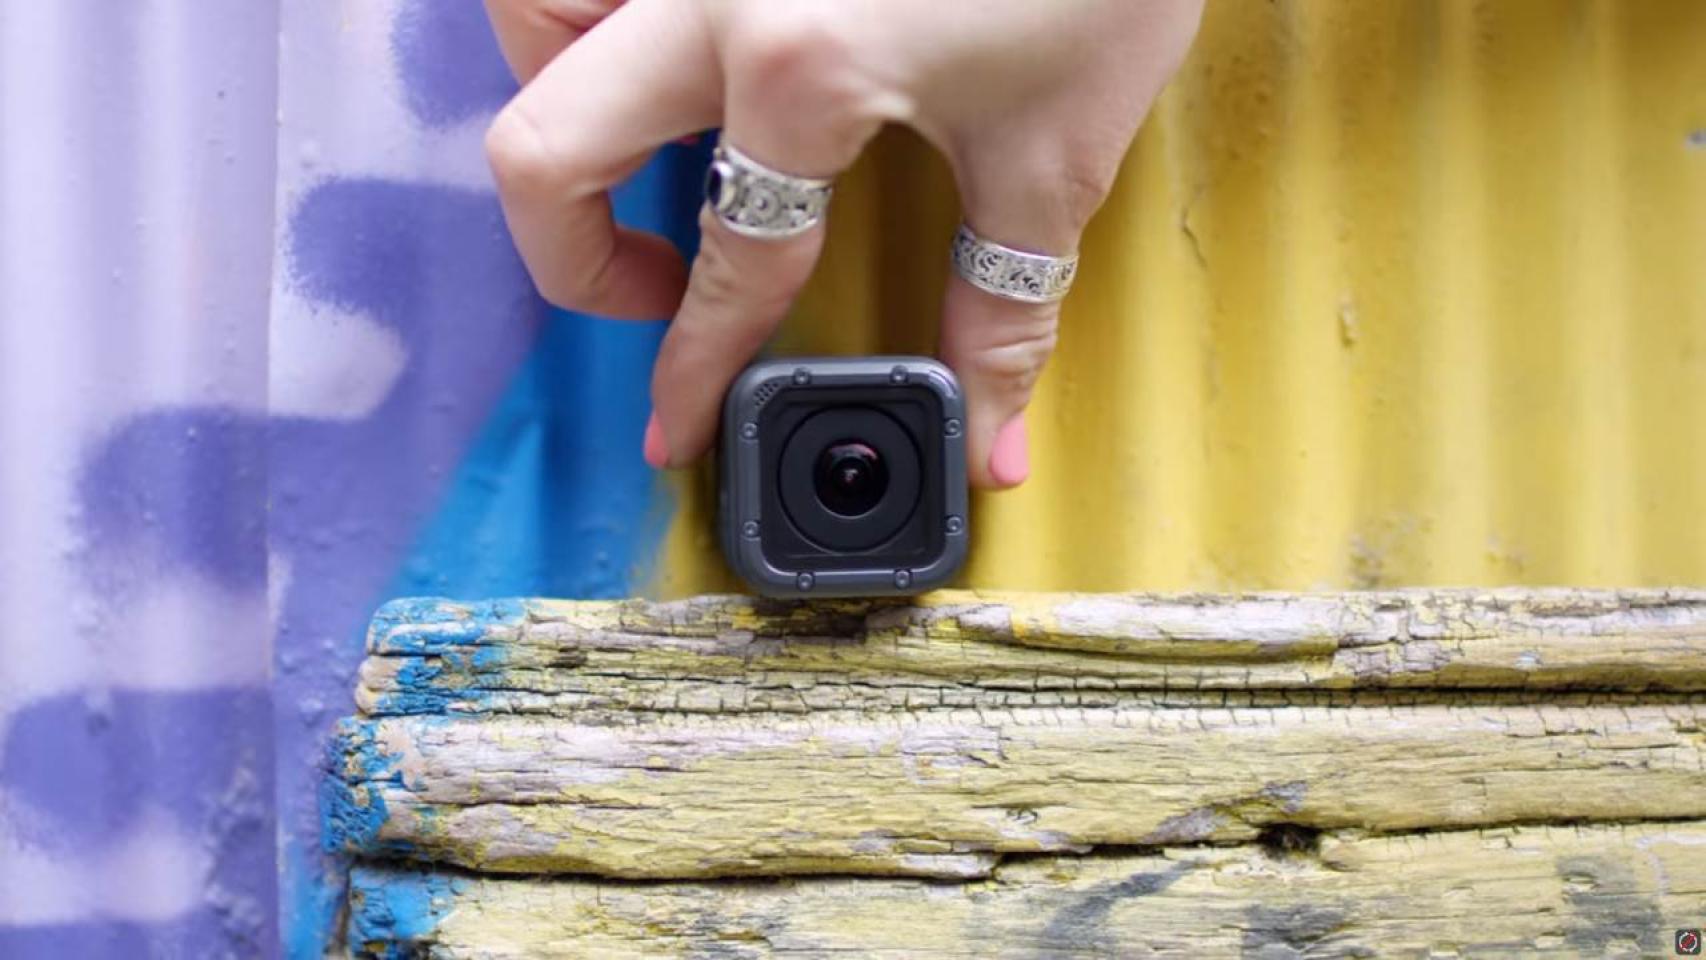 Oferta de trabajo retirarse Barón GoPro Hero 5: La nueva cámara 4K de GoPro ahora es resistente al agua